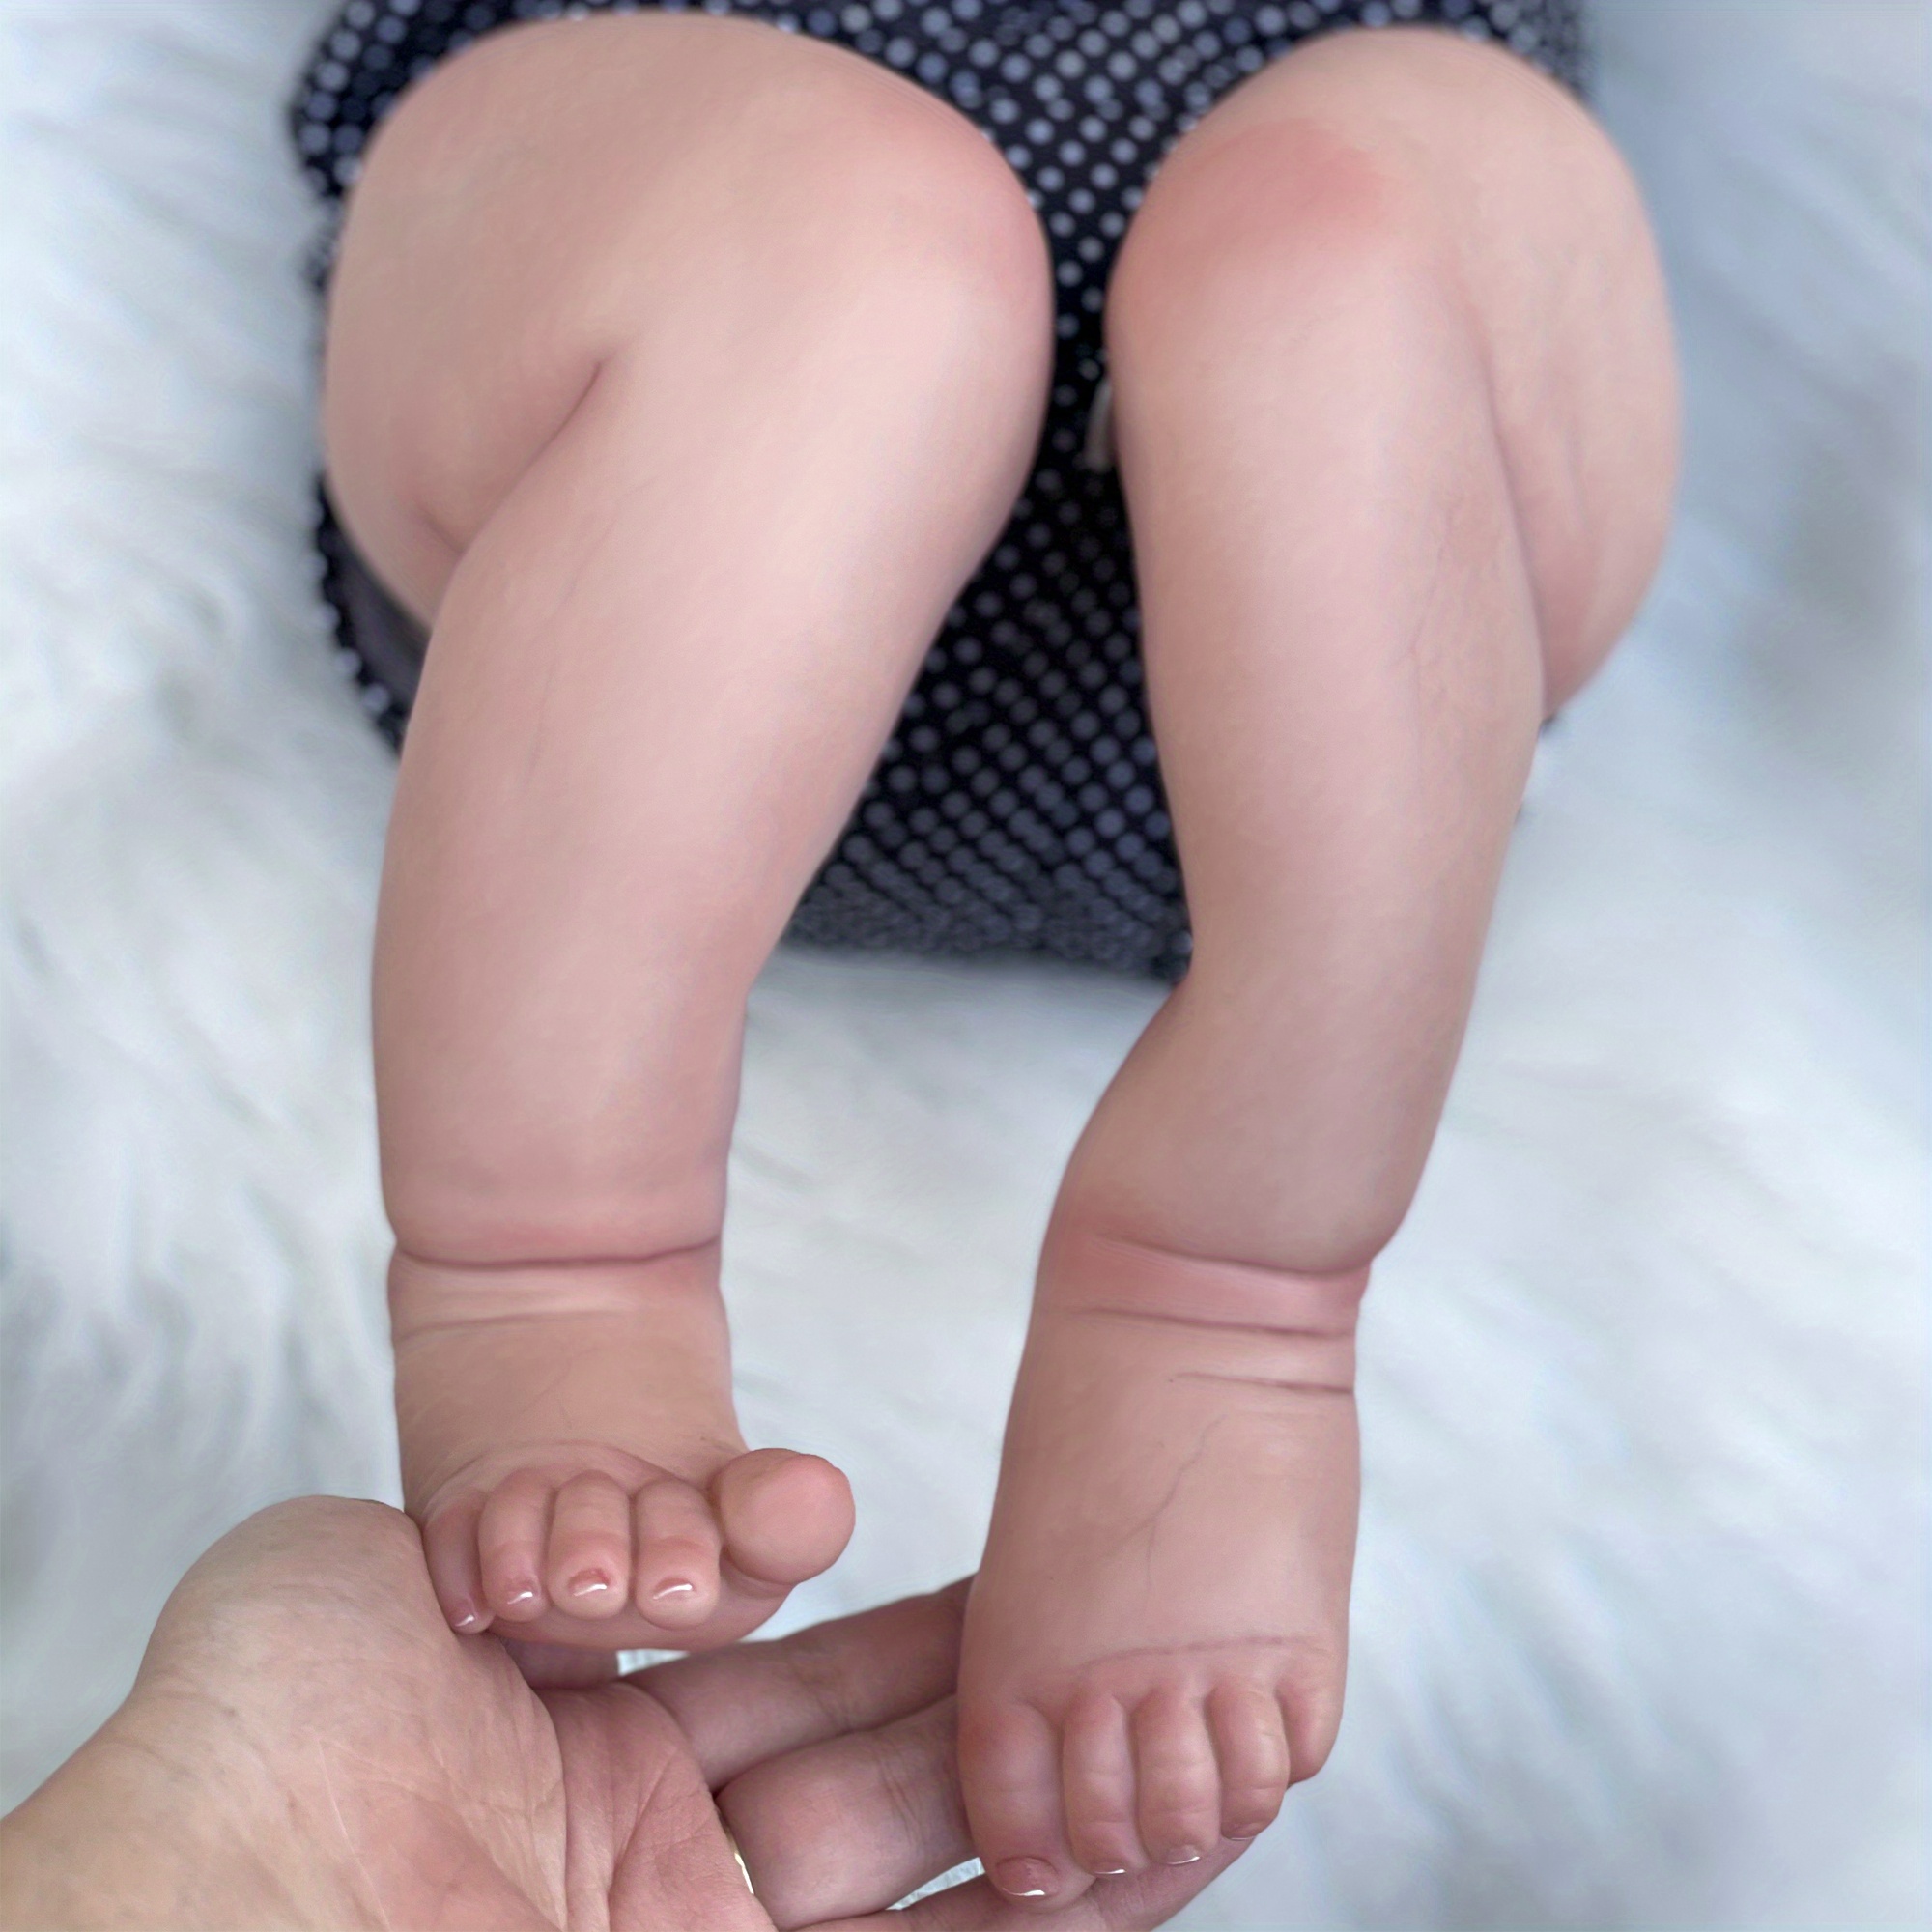 Boneca Bebê Reborn Brianna exclusiva pintada a mão - 50 Centímetros